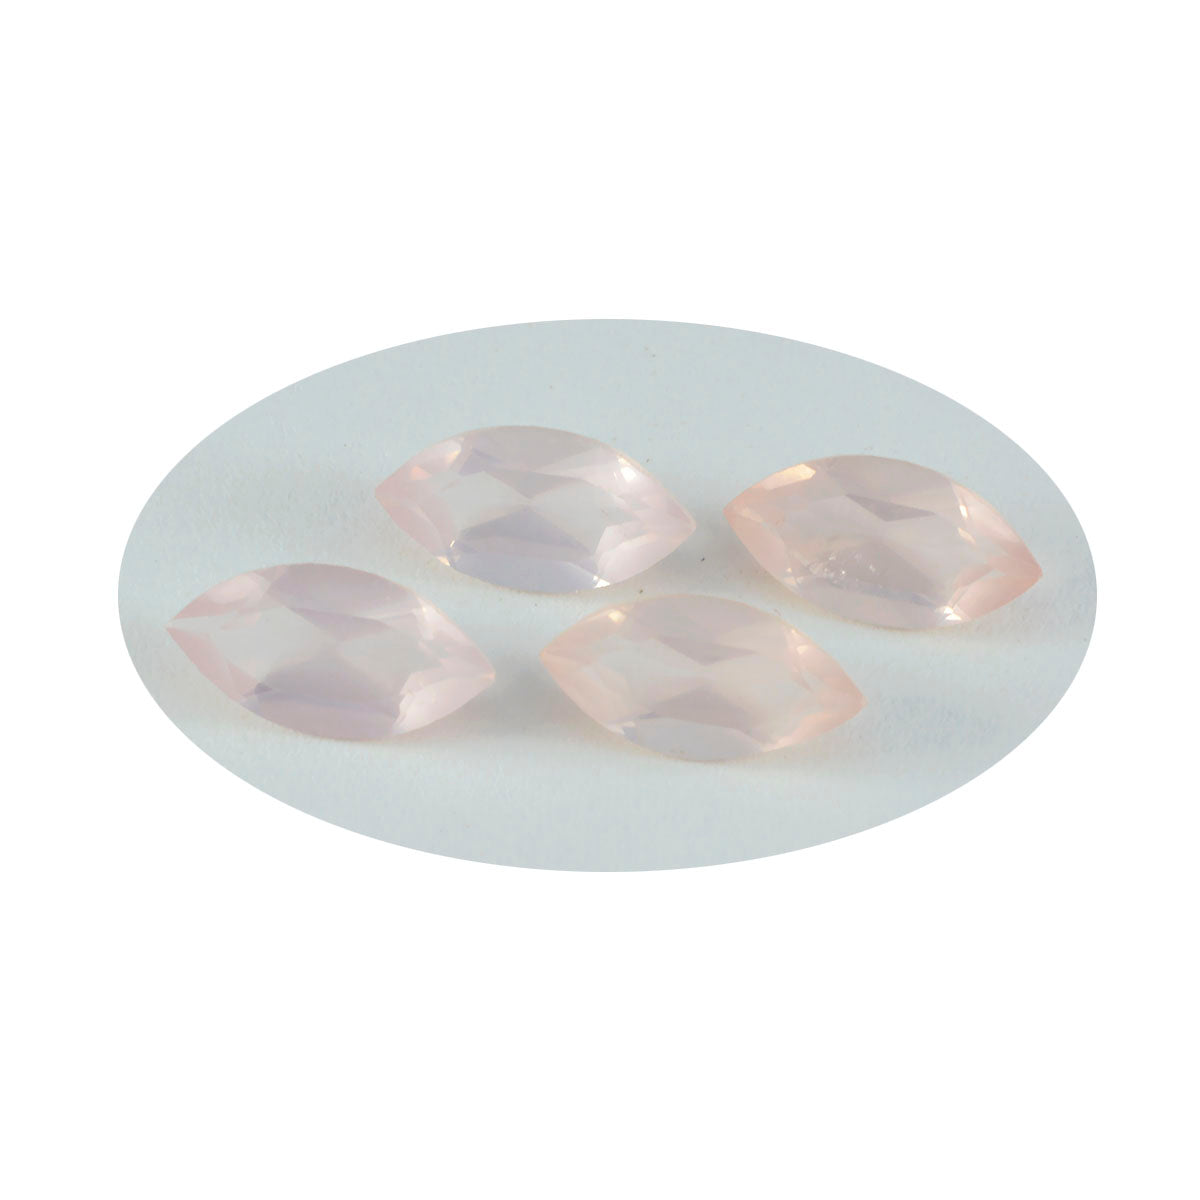 riyogems 1pc quartz rose à facettes 9x18 mm forme marquise pierre précieuse de qualité attrayante